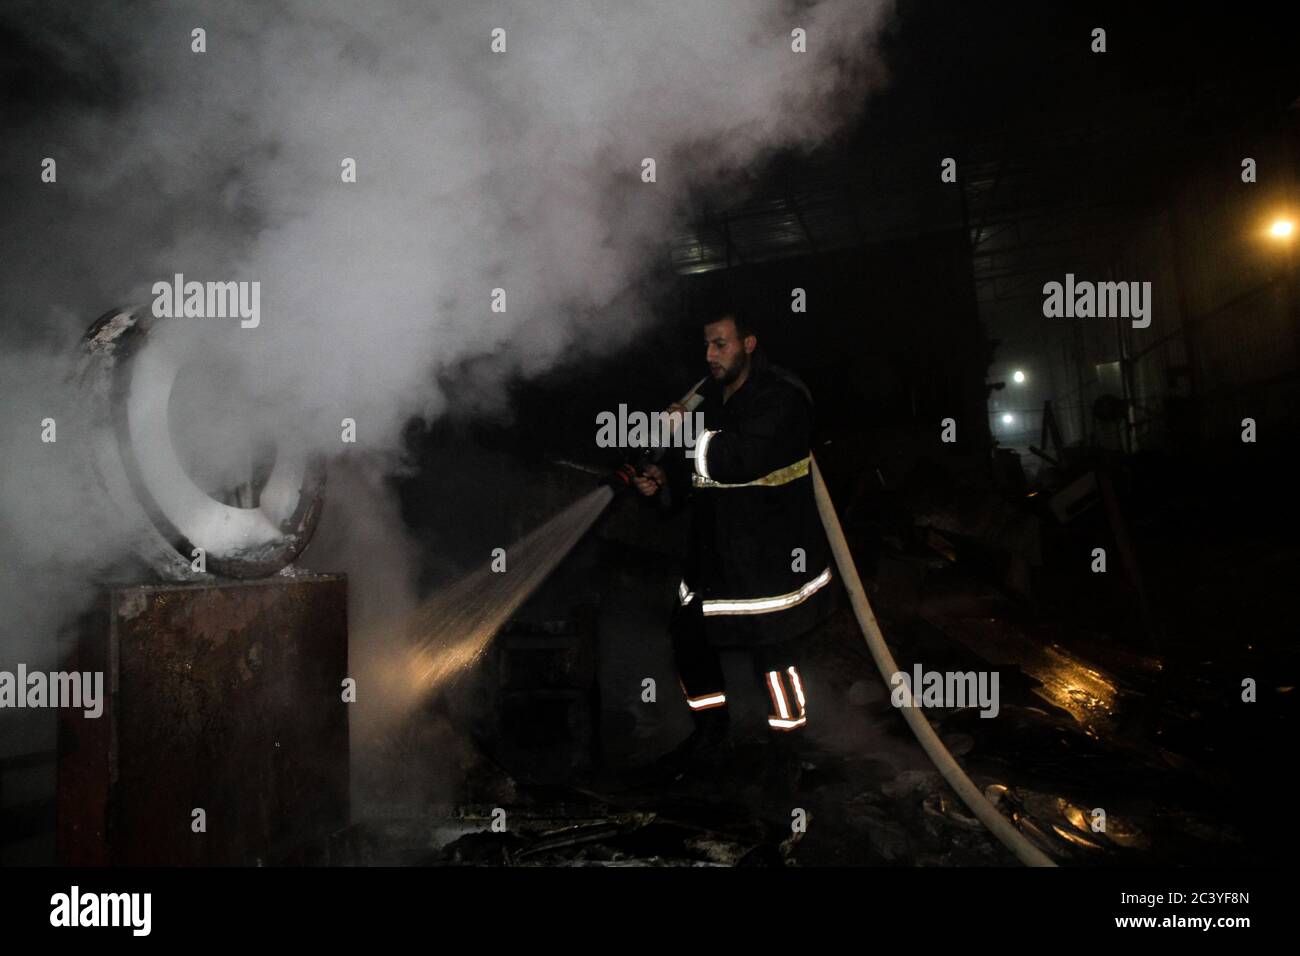 22 juin 2020 : Gaza, Palestine. 22 juin 2020. Les équipes palestiniennes de la Défense civile travaillent pour éteindre un incendie qui a éclaté dans une installation industrielle à l'est du camp de réfugiés de Jabalia. Le personnel du service de secours a eu du mal à contenir et à mettre le feu, ce qui a causé une destruction grave de l'usine. Le bâtiment brûlé est situé près des bureaux de l'Administration civile dans le nord de la bande de Gaza crédit: Ahmad Haaballah/IMAGESLIVE/ZUMA Wire/Alamy Live News Banque D'Images